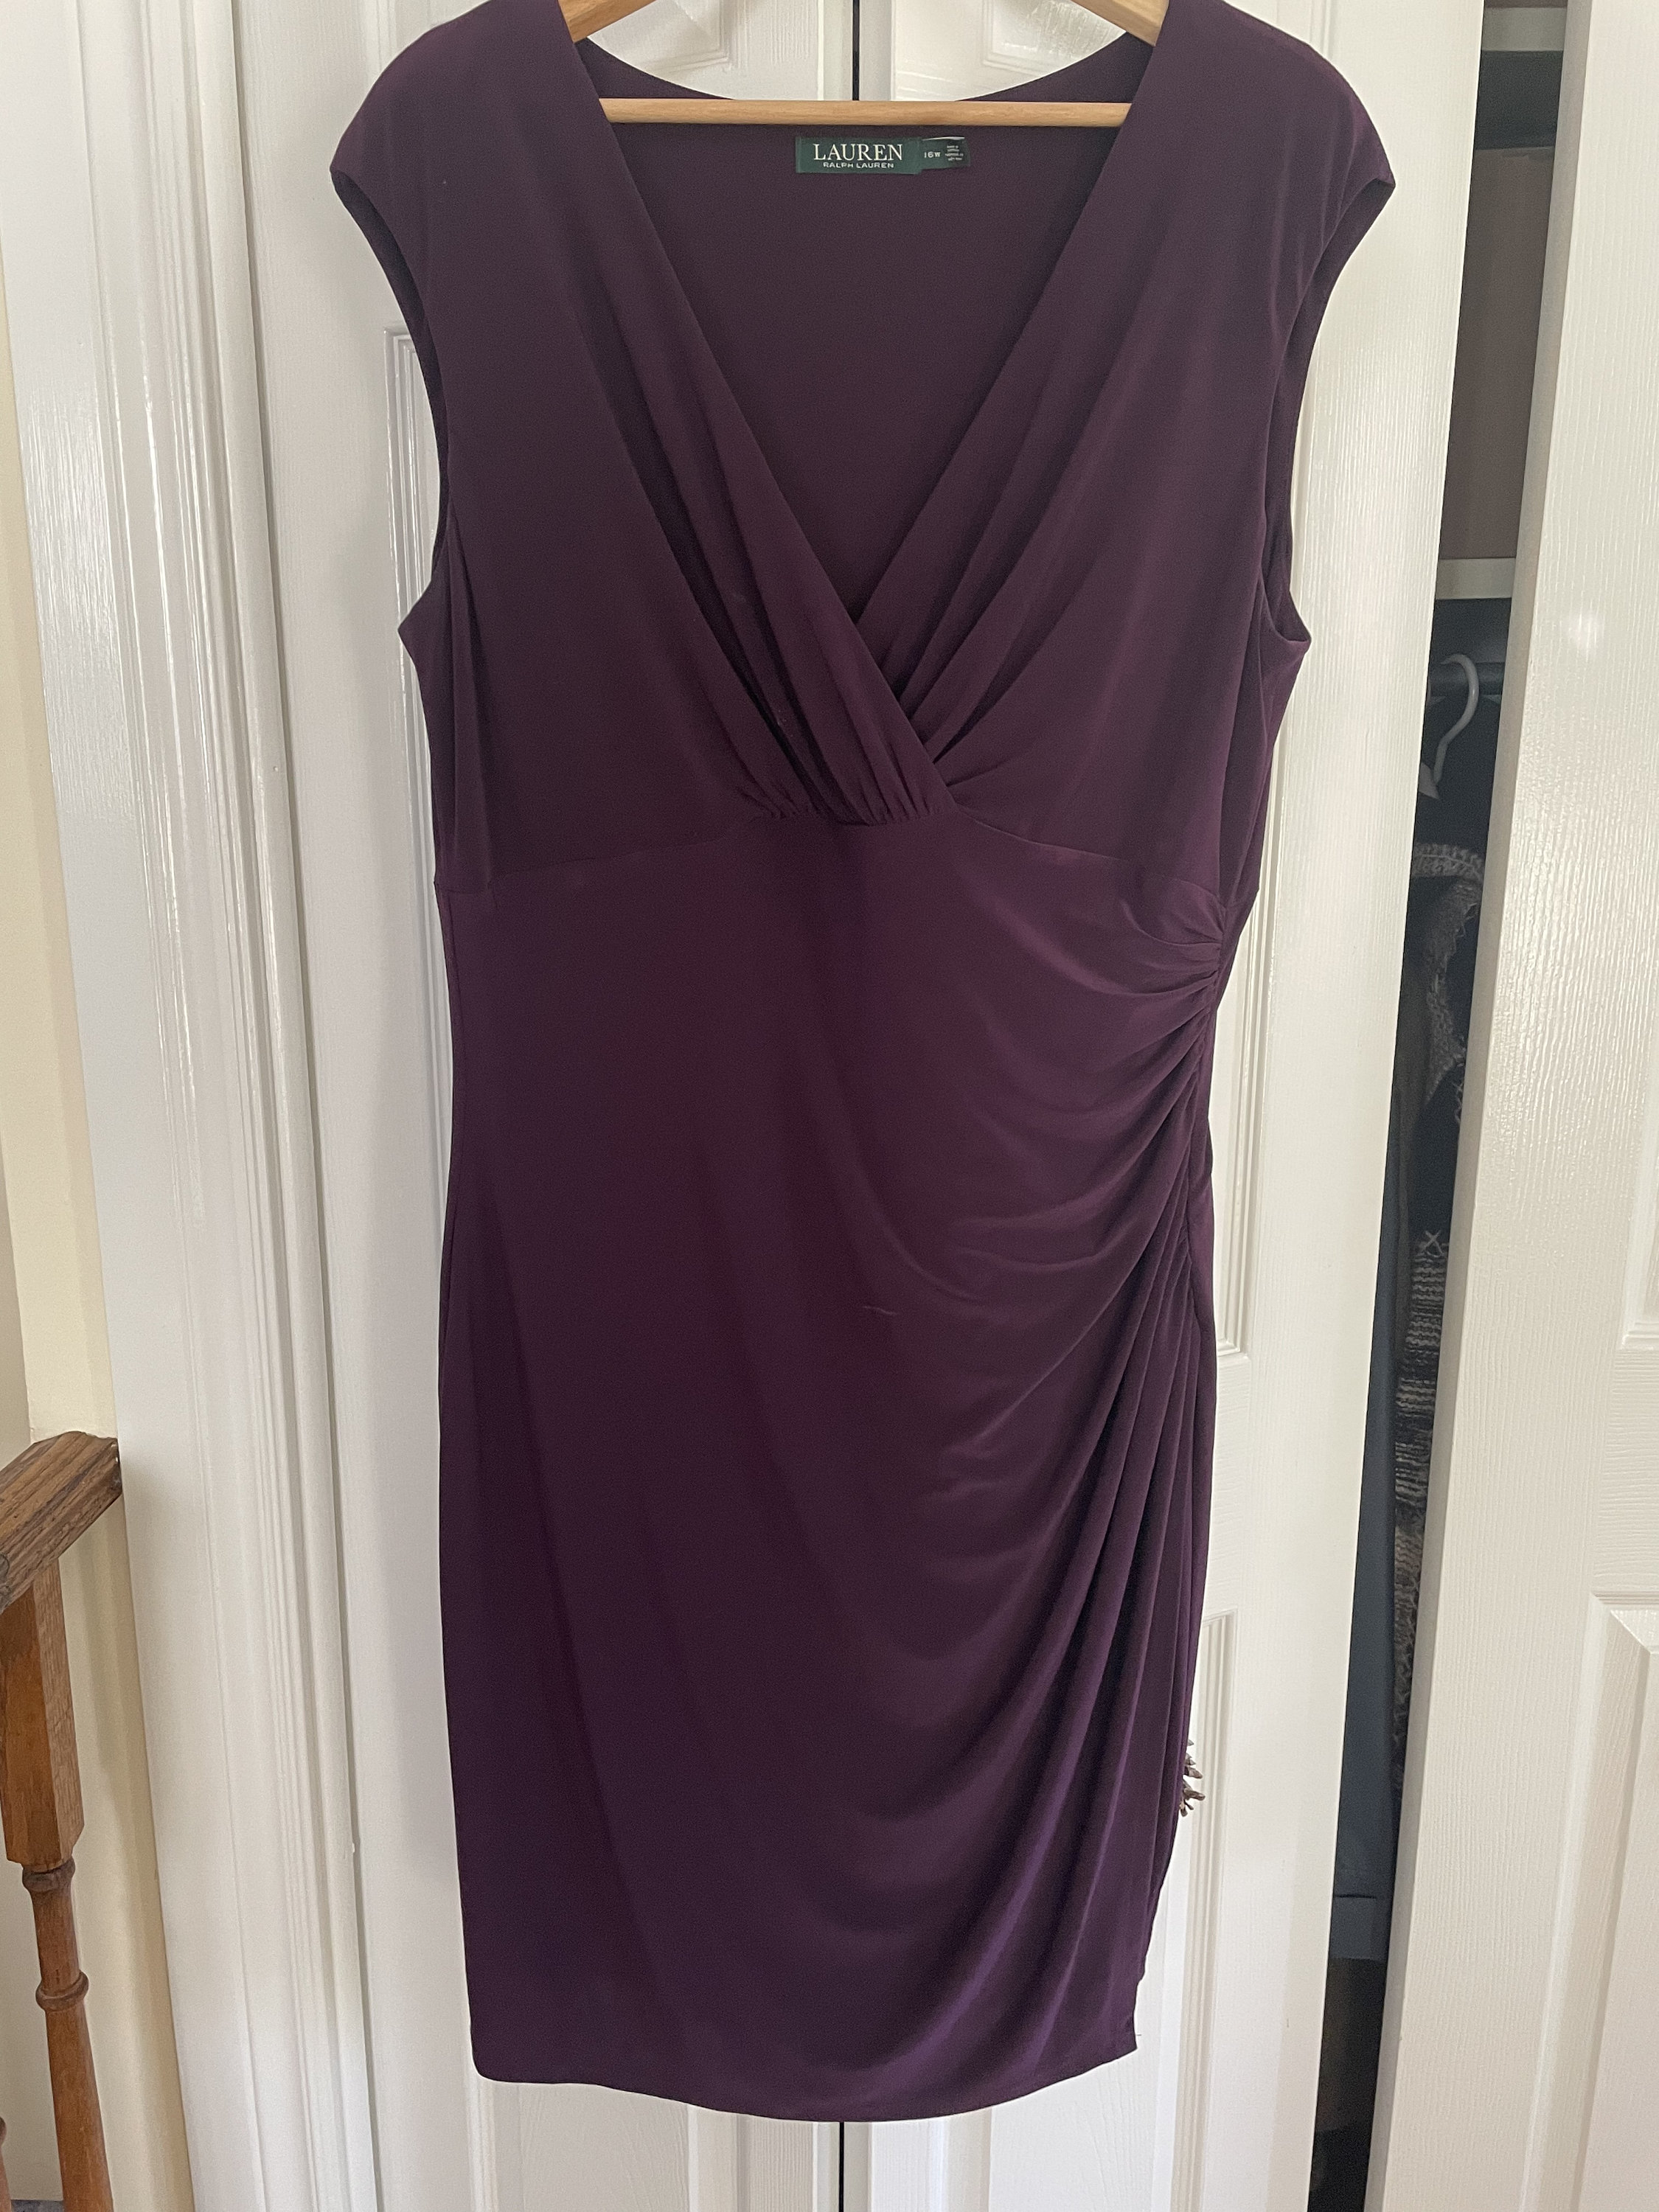 Ralph Lauren Summer Dress/plum Dress/sleeveless/size 16w/like - Etsy